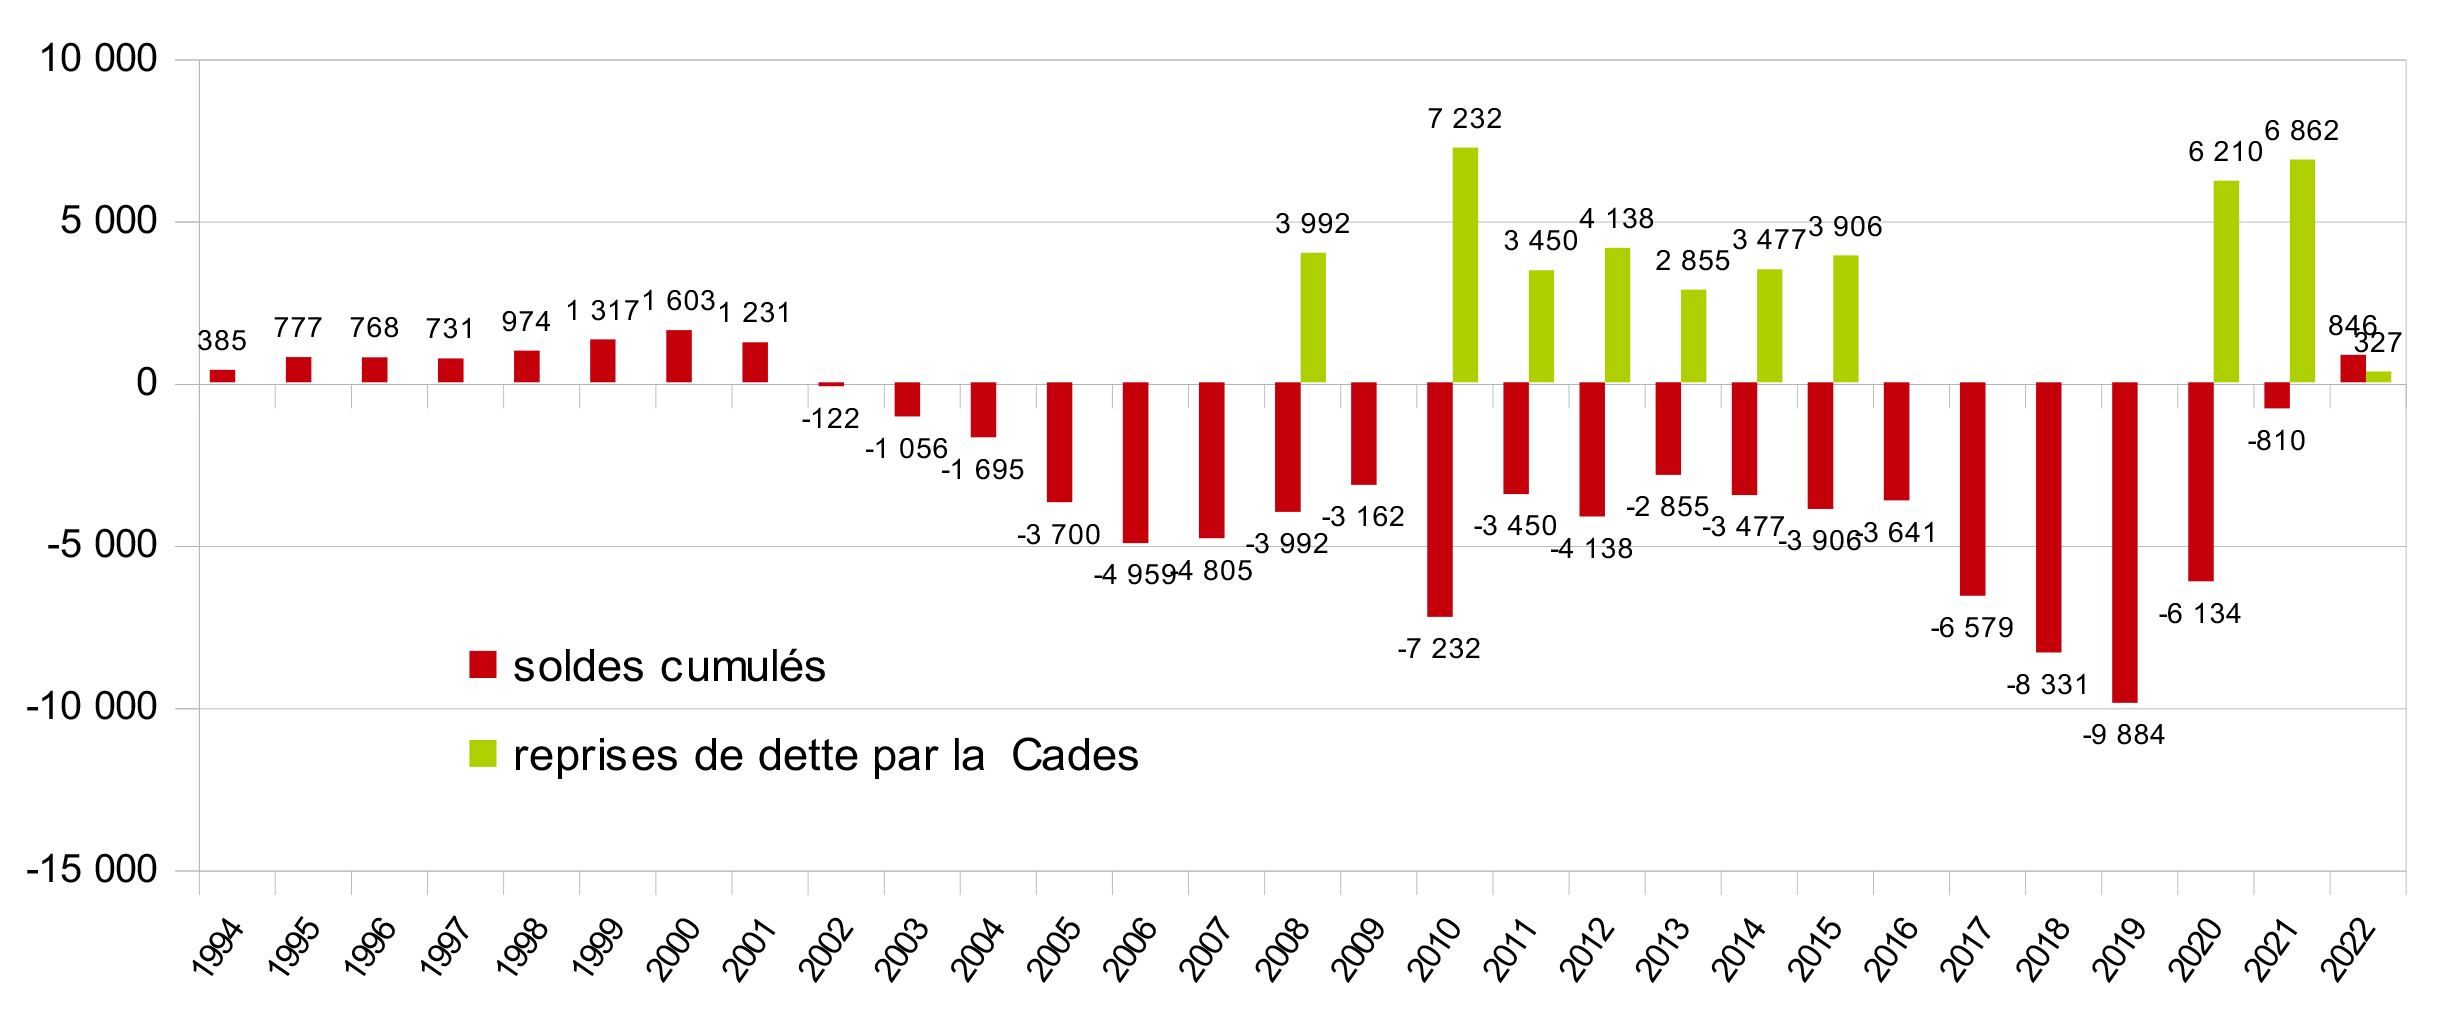 Soldes cumulés du FSV et reprises de dette par la CADES de 1994 à 2022